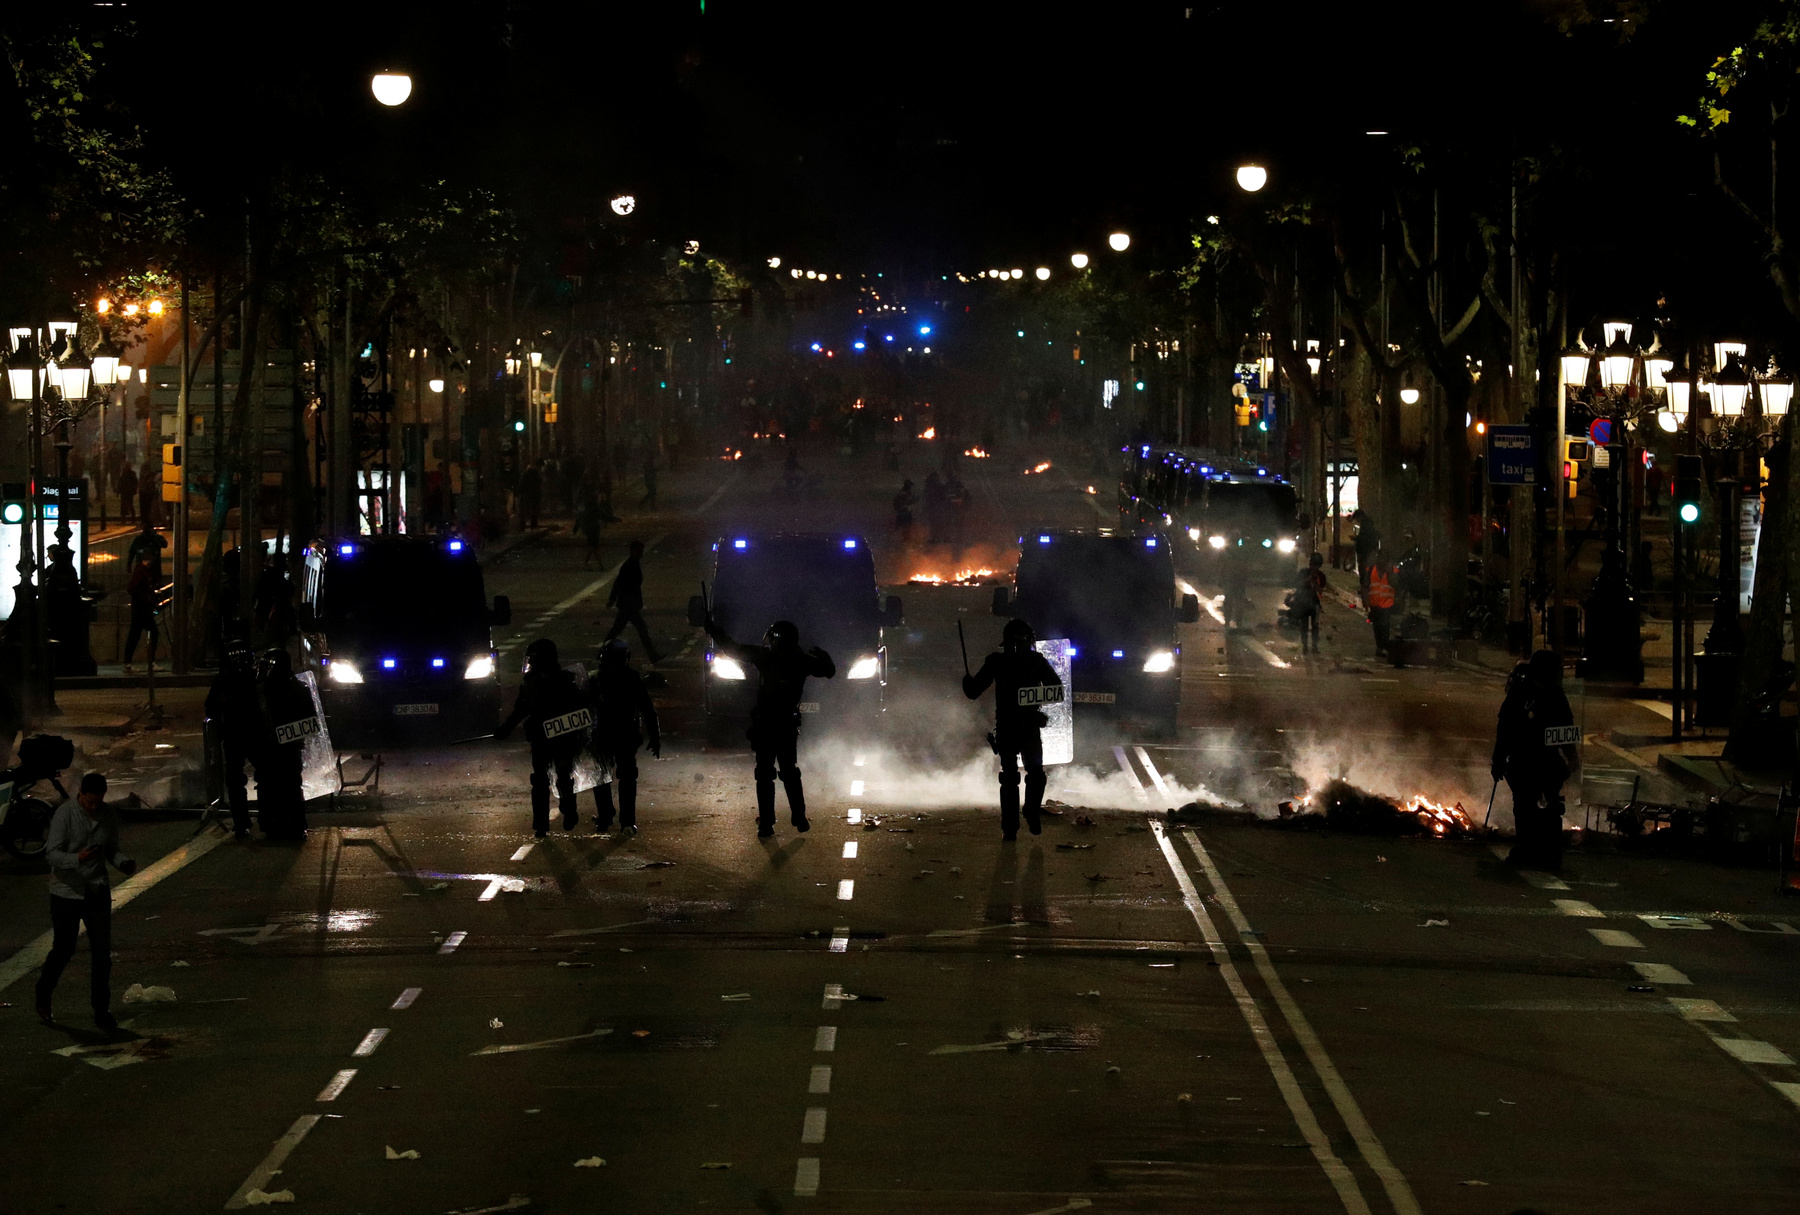 A spanyol kormány kedd éjszaka kiadott közleményében elítélte a függetlenségpártiak erőszakos cselekményeit, a károkozást és a vandalizmust, és méltatta a katalán és az országos rendőrség együttműködését